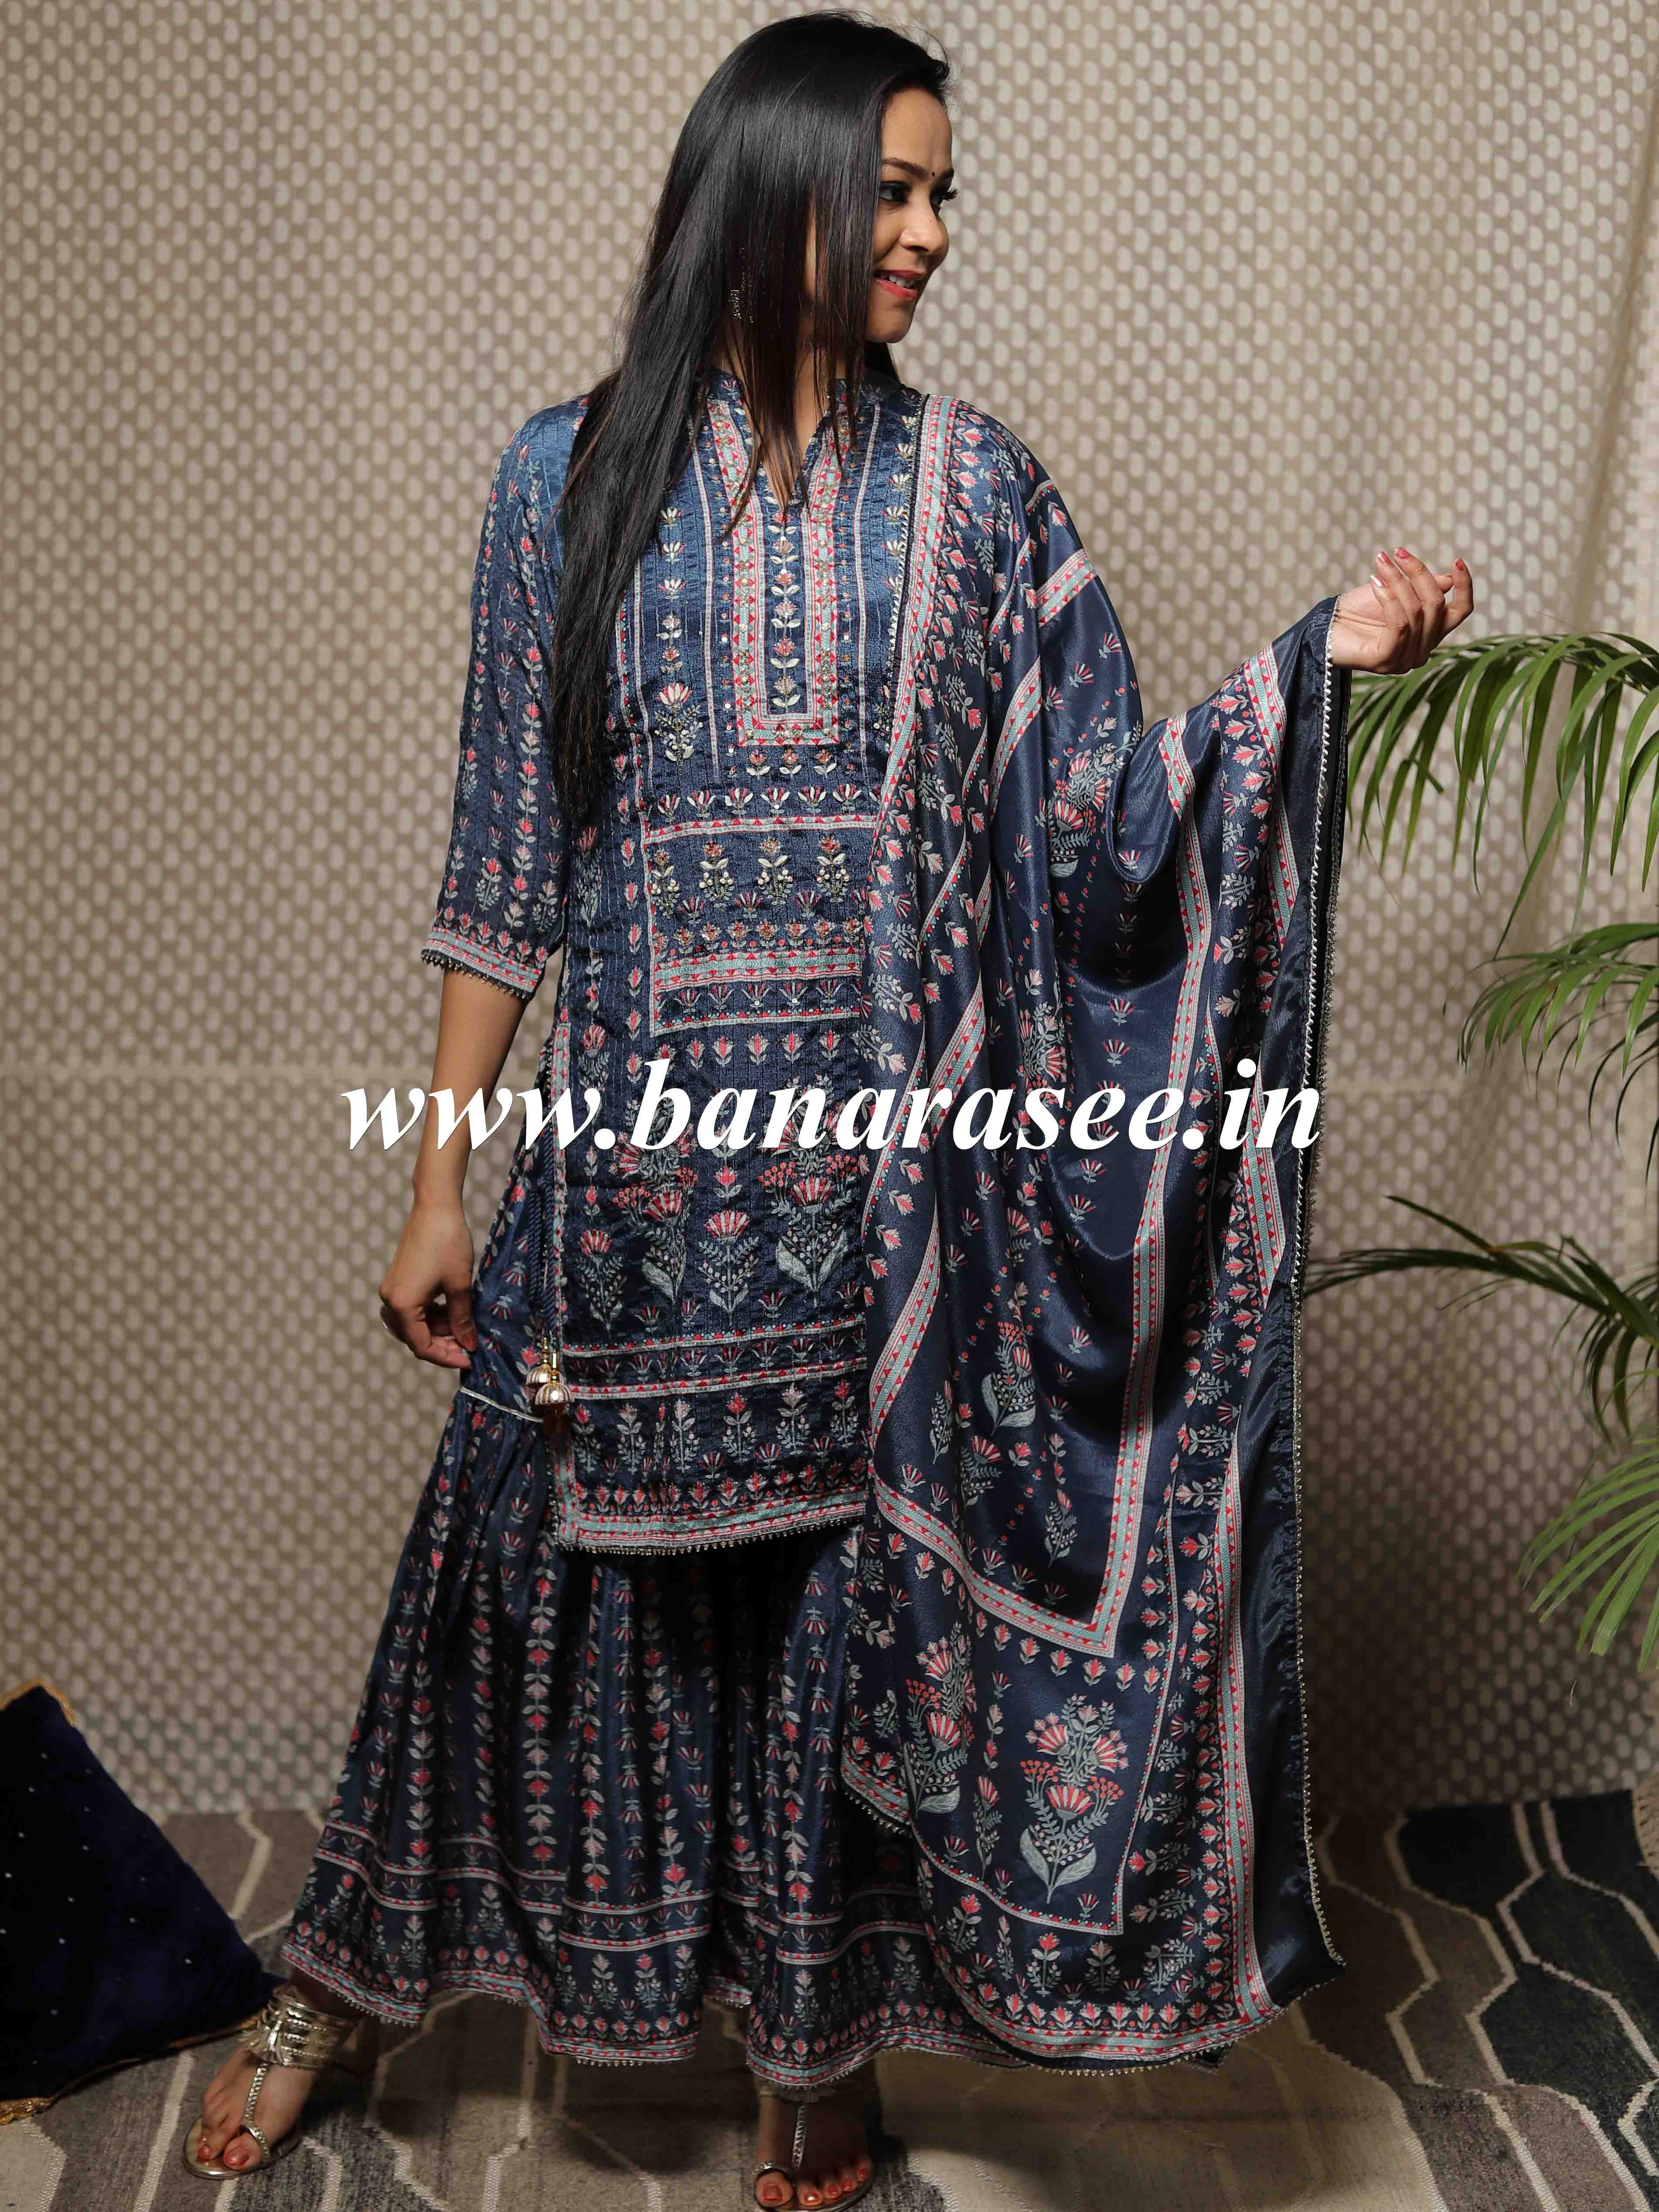 Banarasee Floral Printed Sequinned Kurta With Sharara & Dupatta-Blue